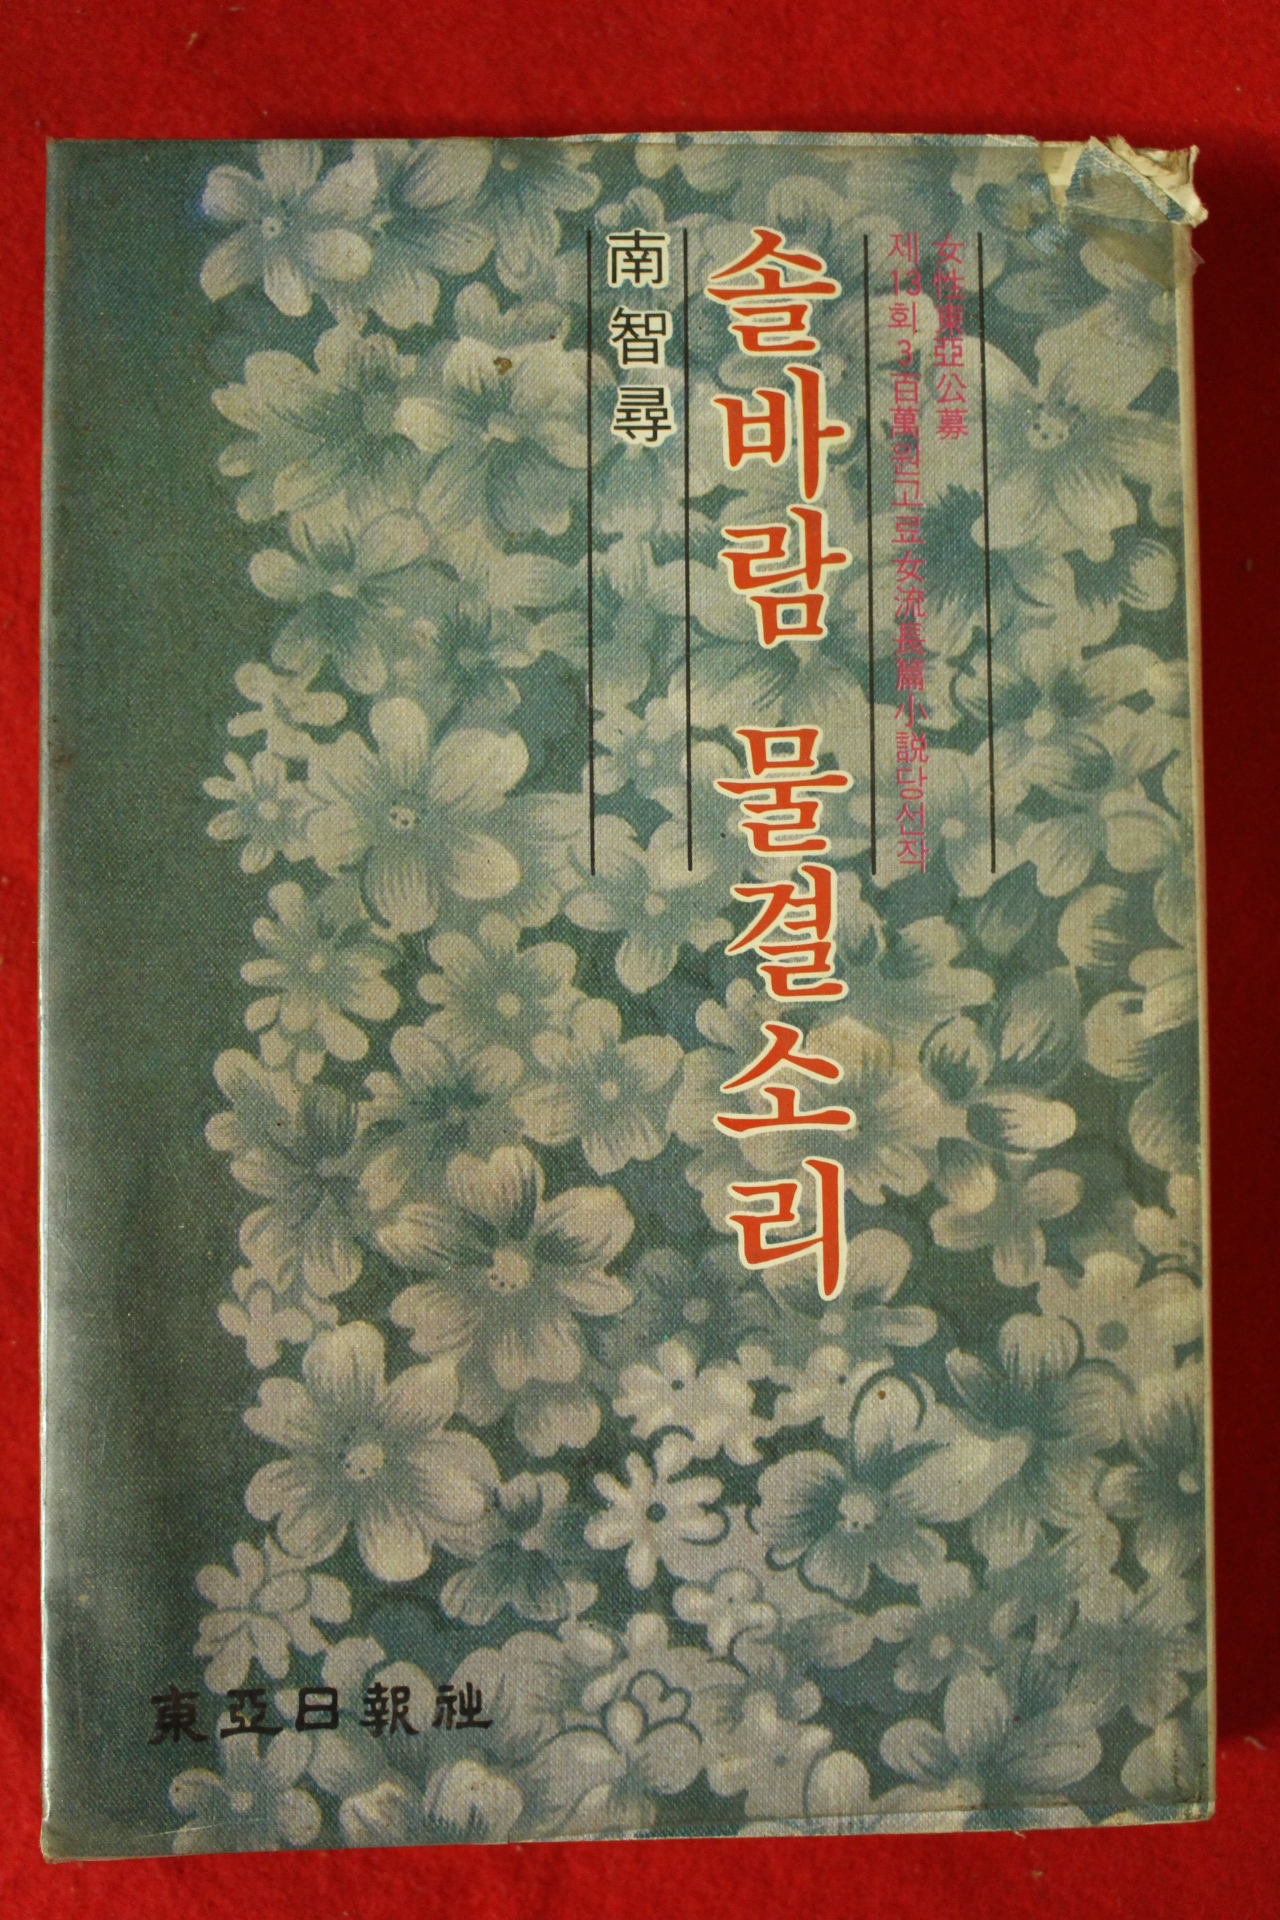 1980년초판 남지심(南智尋) 솔바람 물결소리